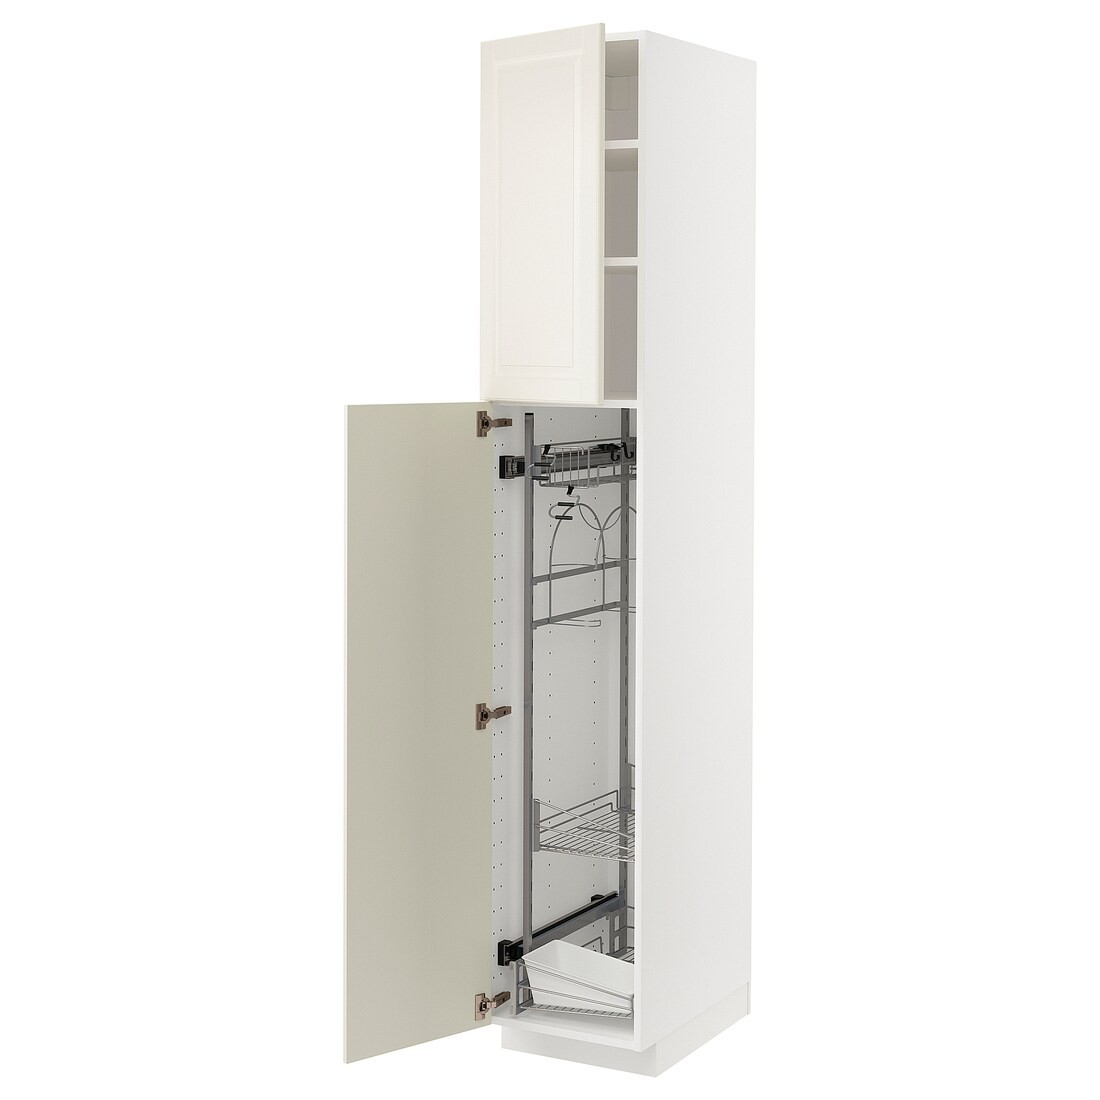 METOD МЕТОД Высокий шкаф с отделением для аксессуаров для уборки, белый / Bodbyn кремовый, 40x60x220 см